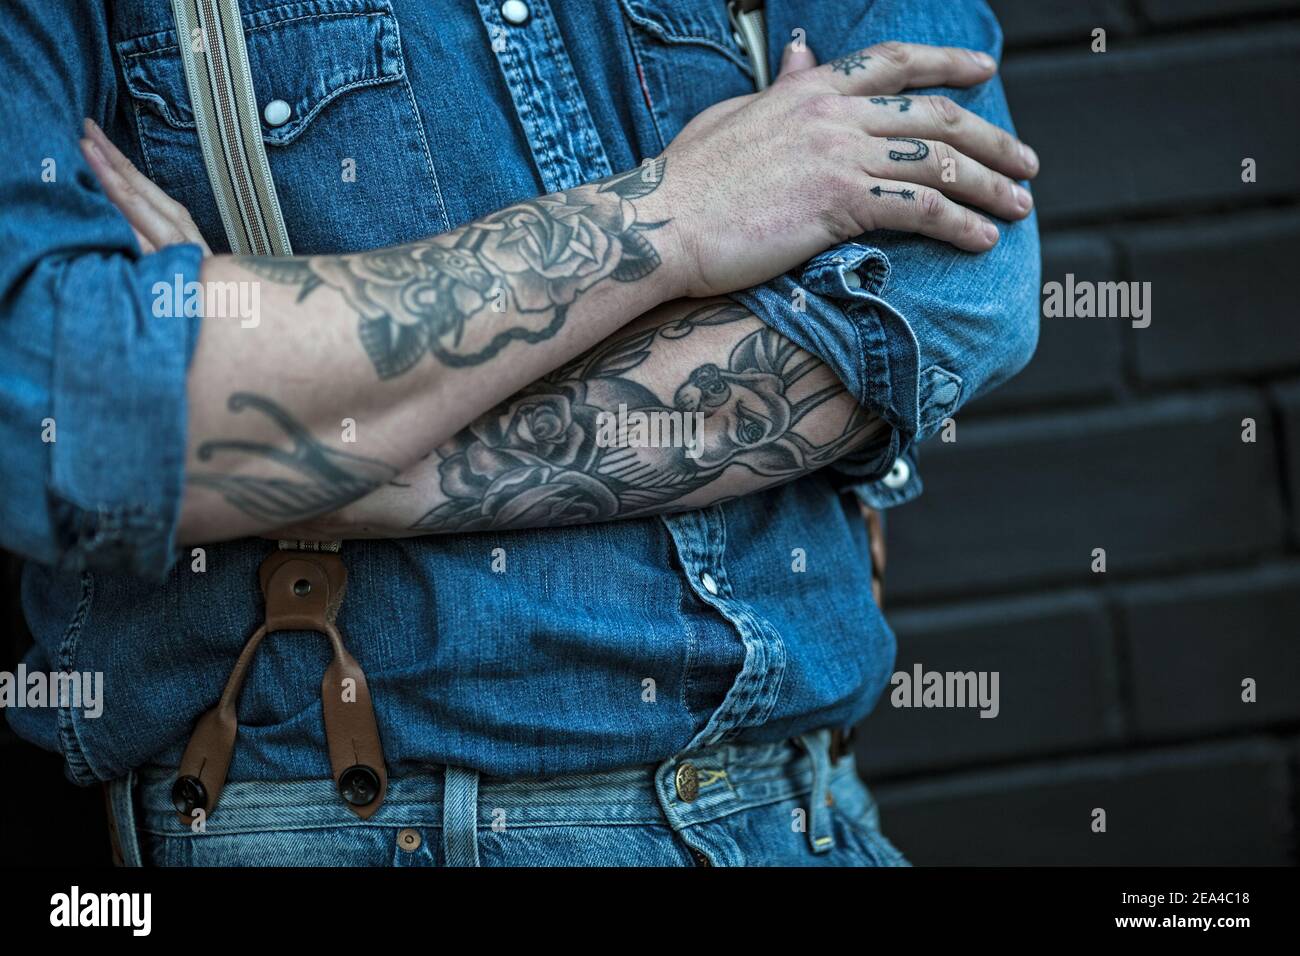 uomo con tatuaggi che indossa jeans con sospenditori Foto Stock